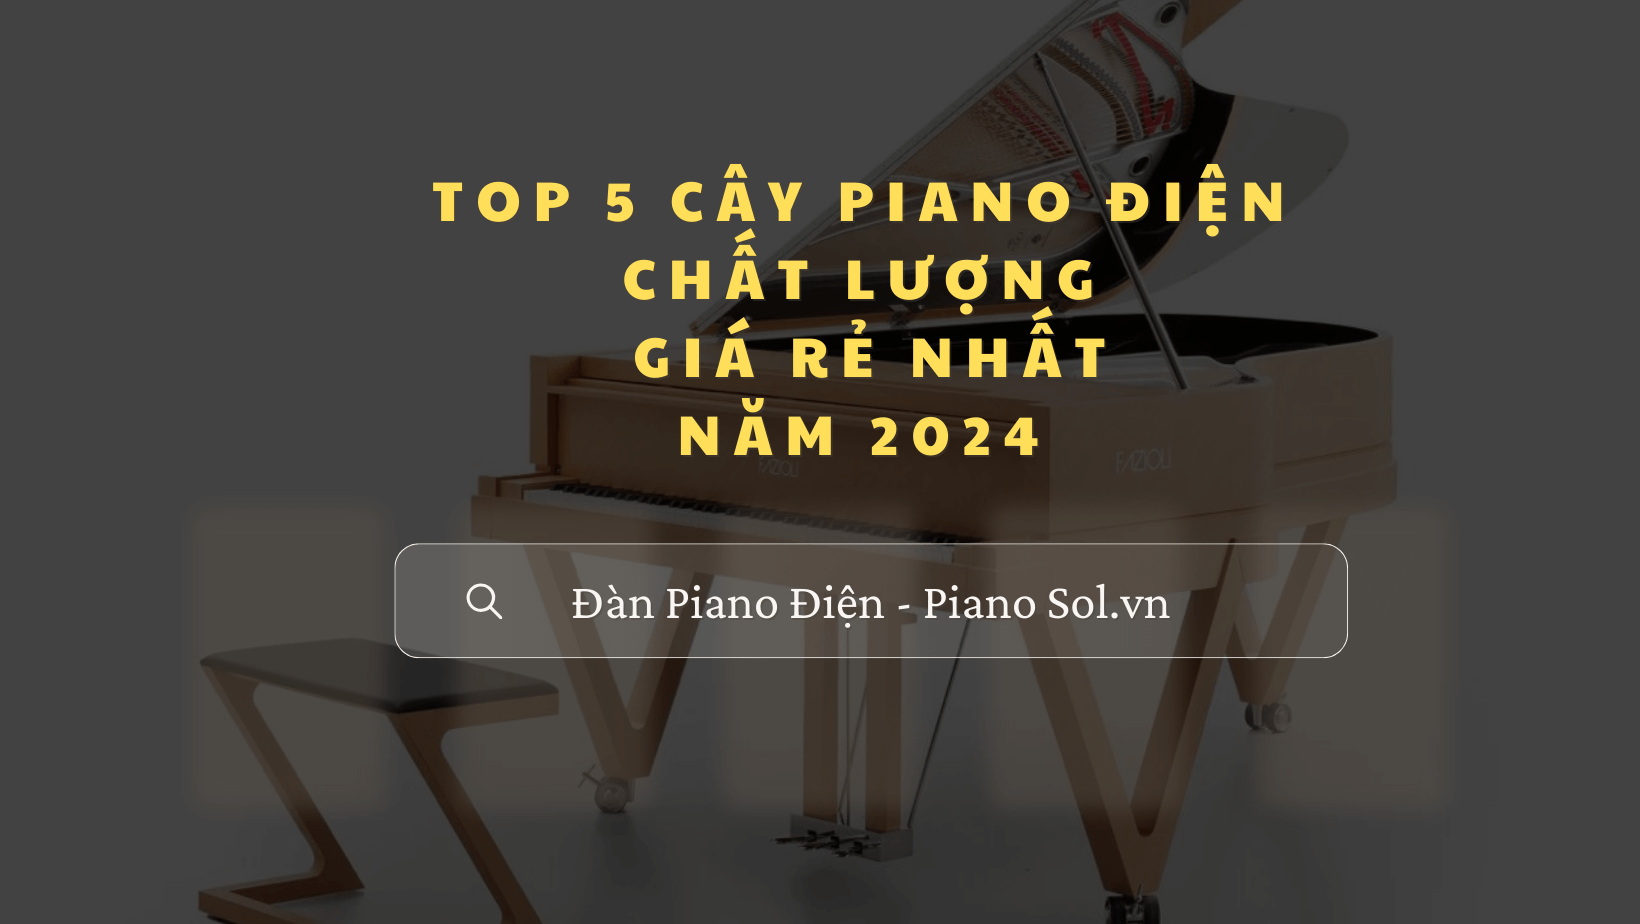 Top 5 cây đàn piano điện chất lượng giá rẻ nhất năm 2024